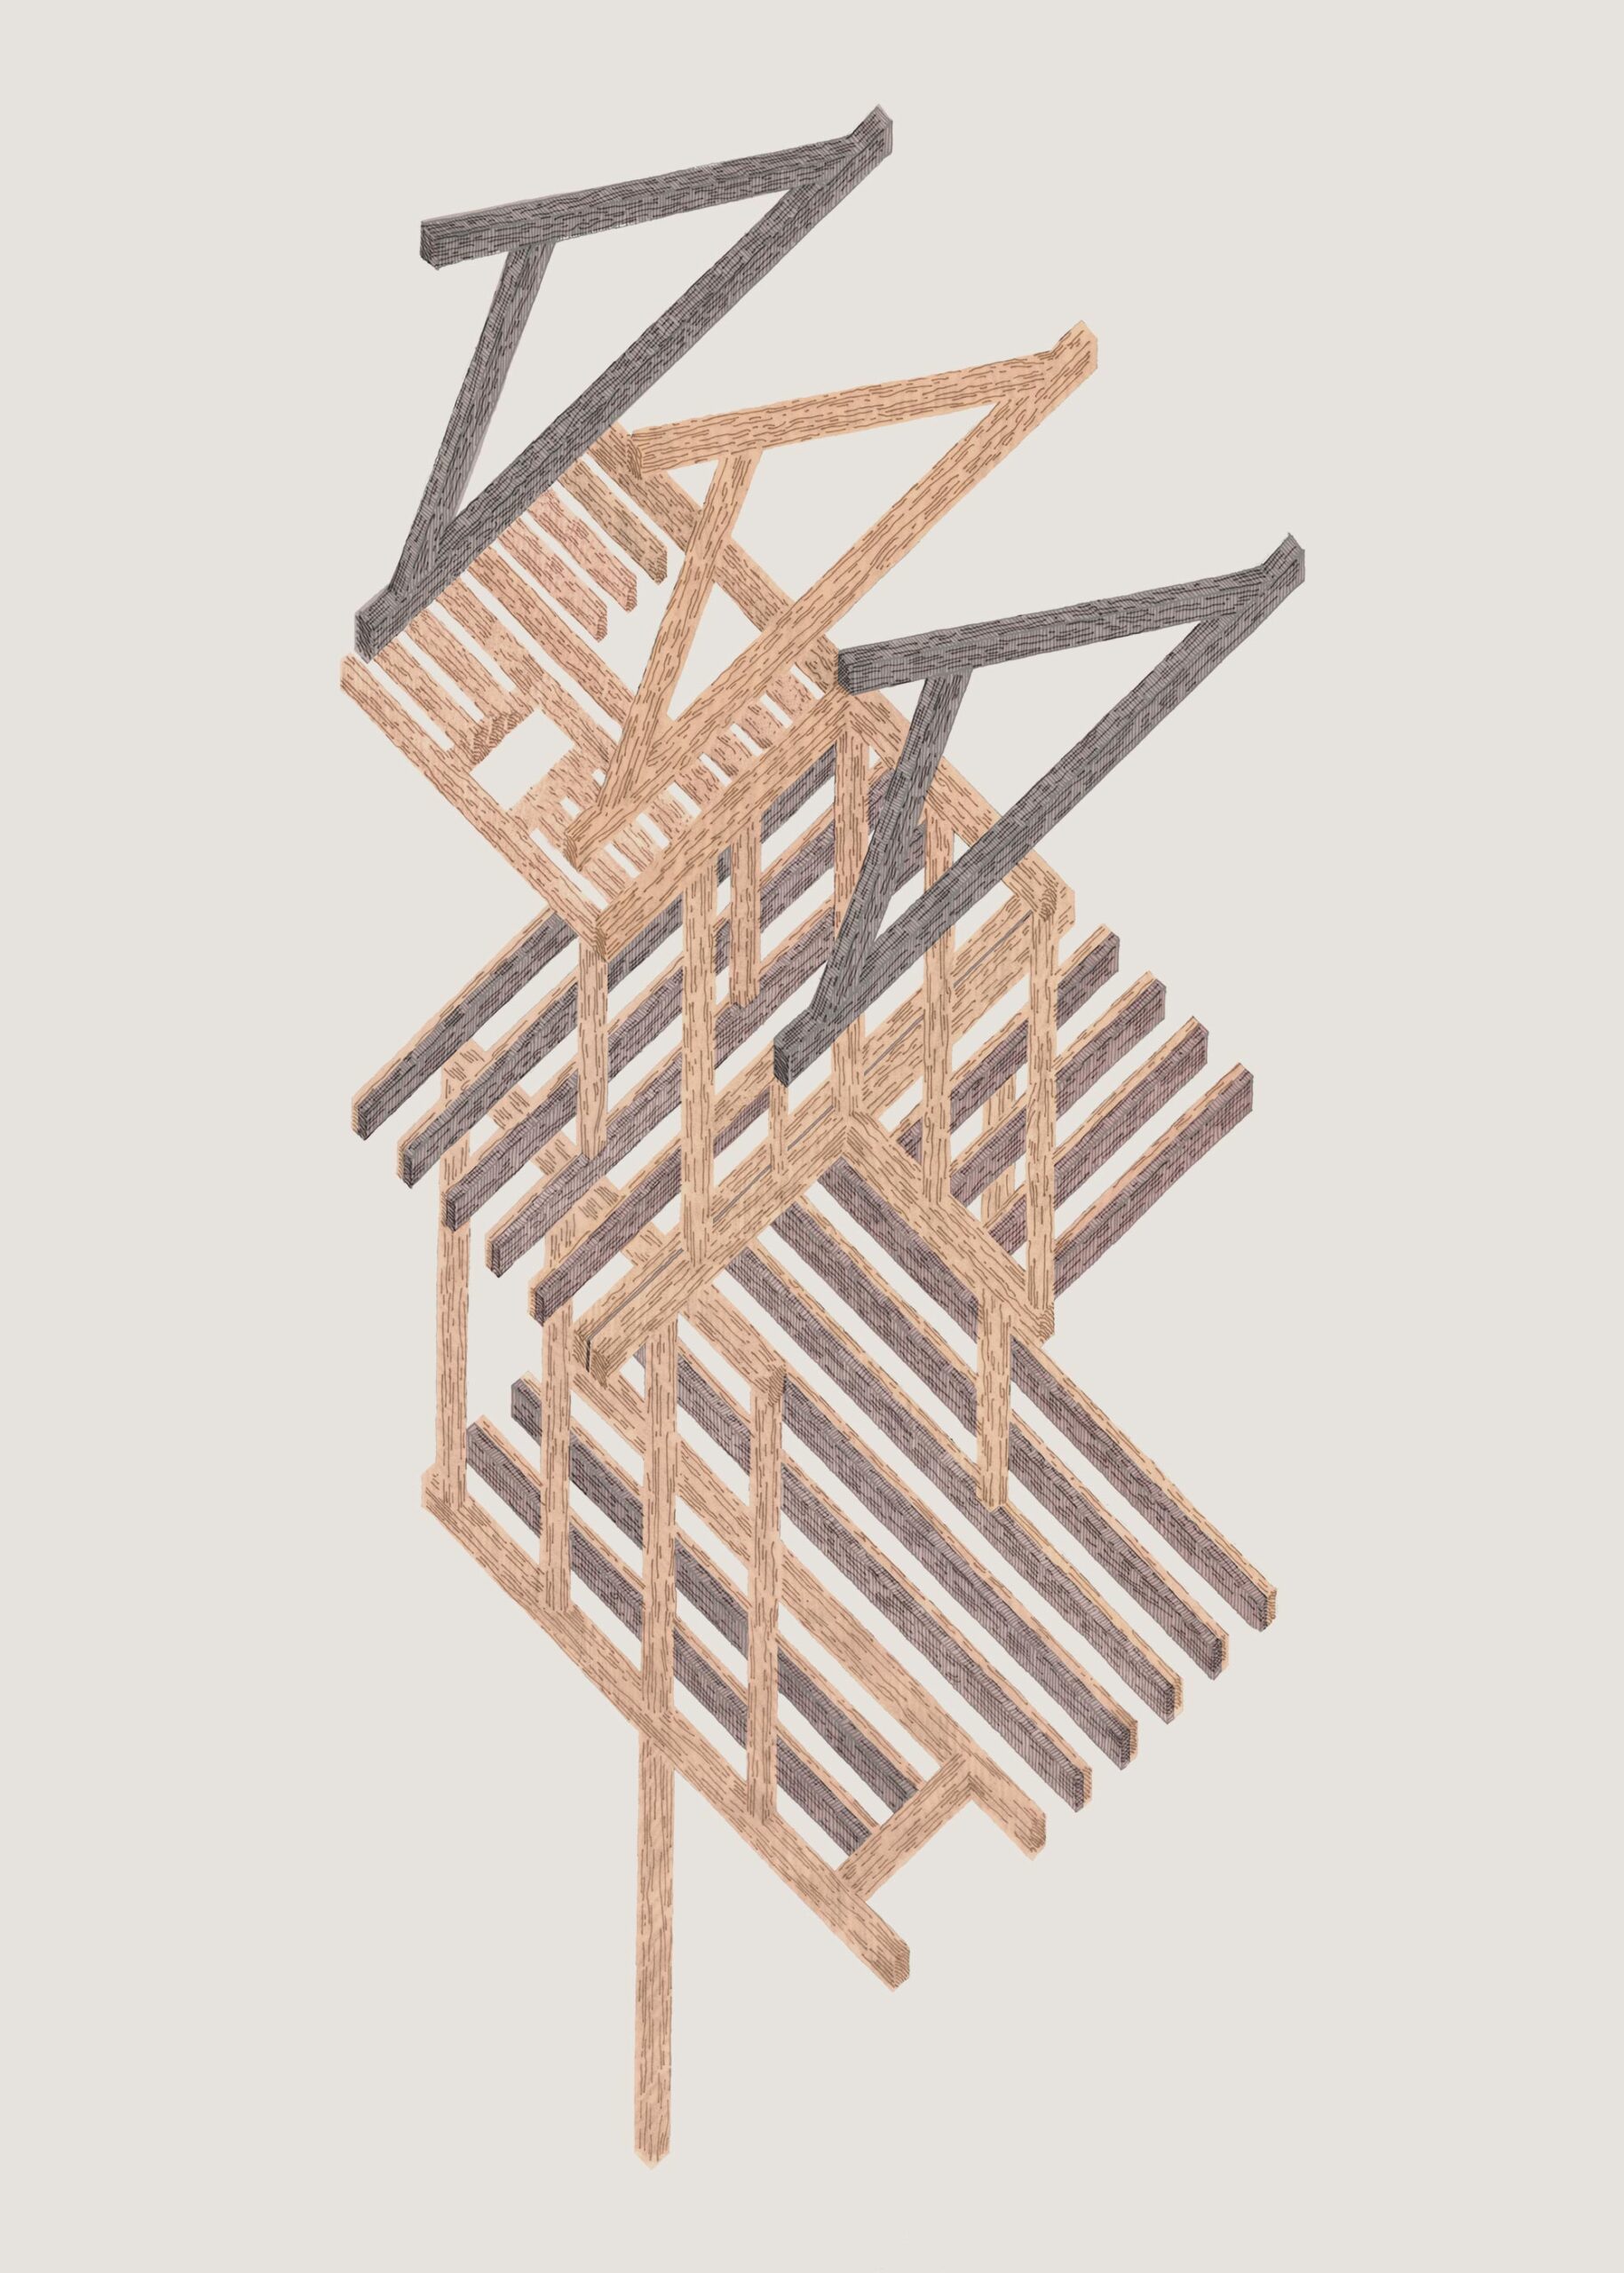 Assonometria della struttura in legno a traliccio: da singolo palo a tettoia strutturale.